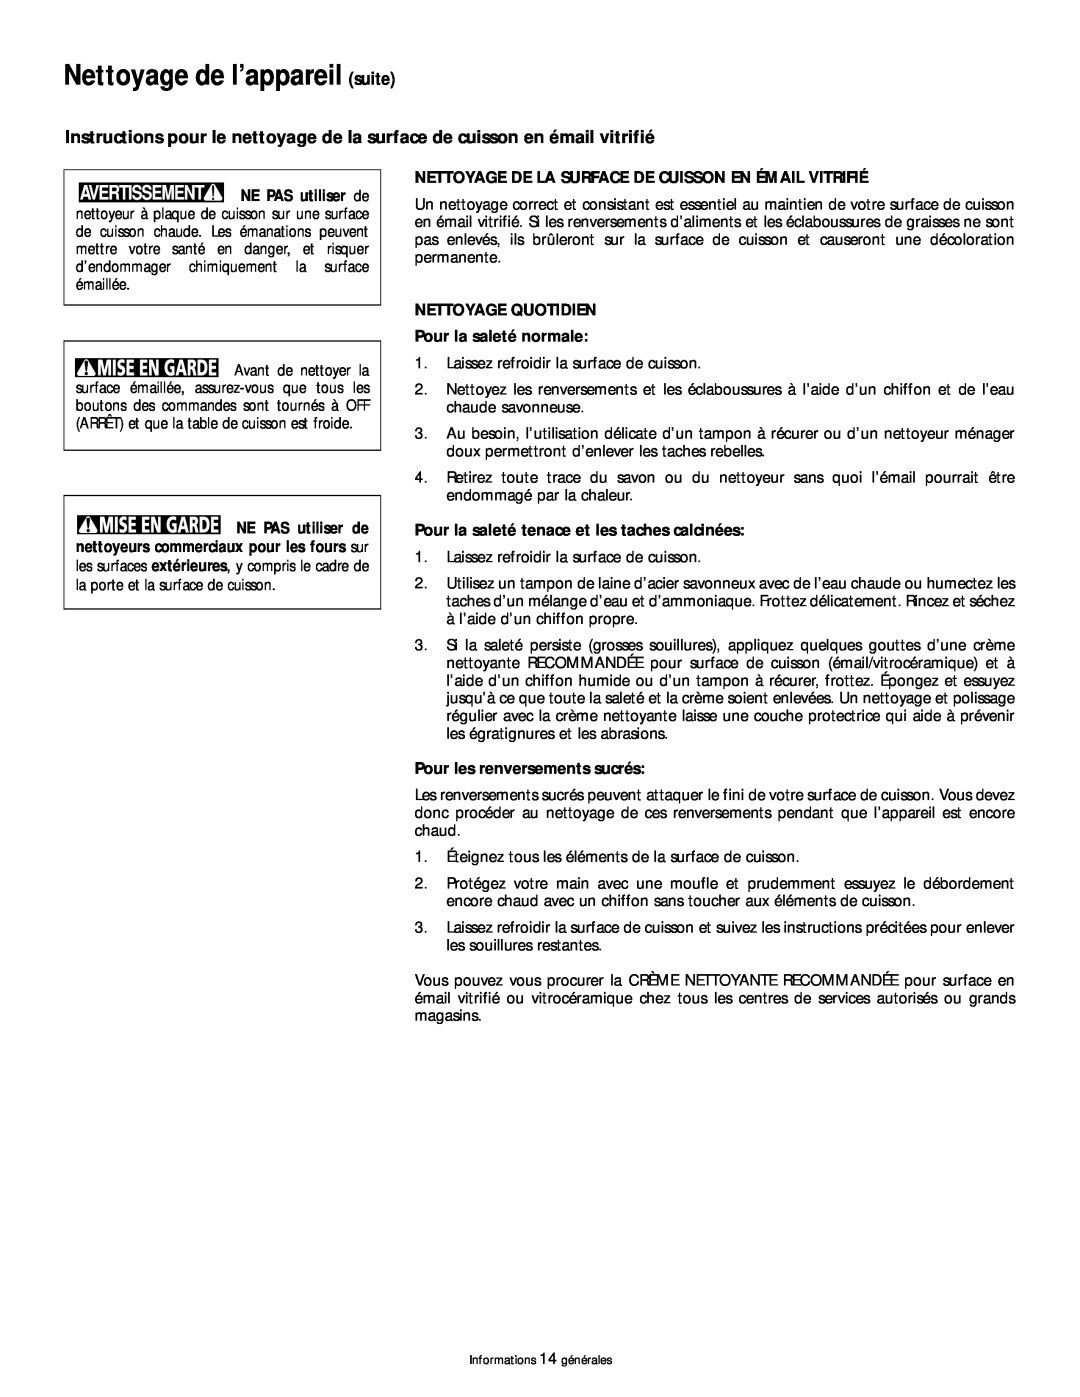 Frigidaire 318200404 manual Nettoyage de l’appareil suite, Nettoyage De La Surface De Cuisson En Émail Vitrifié 